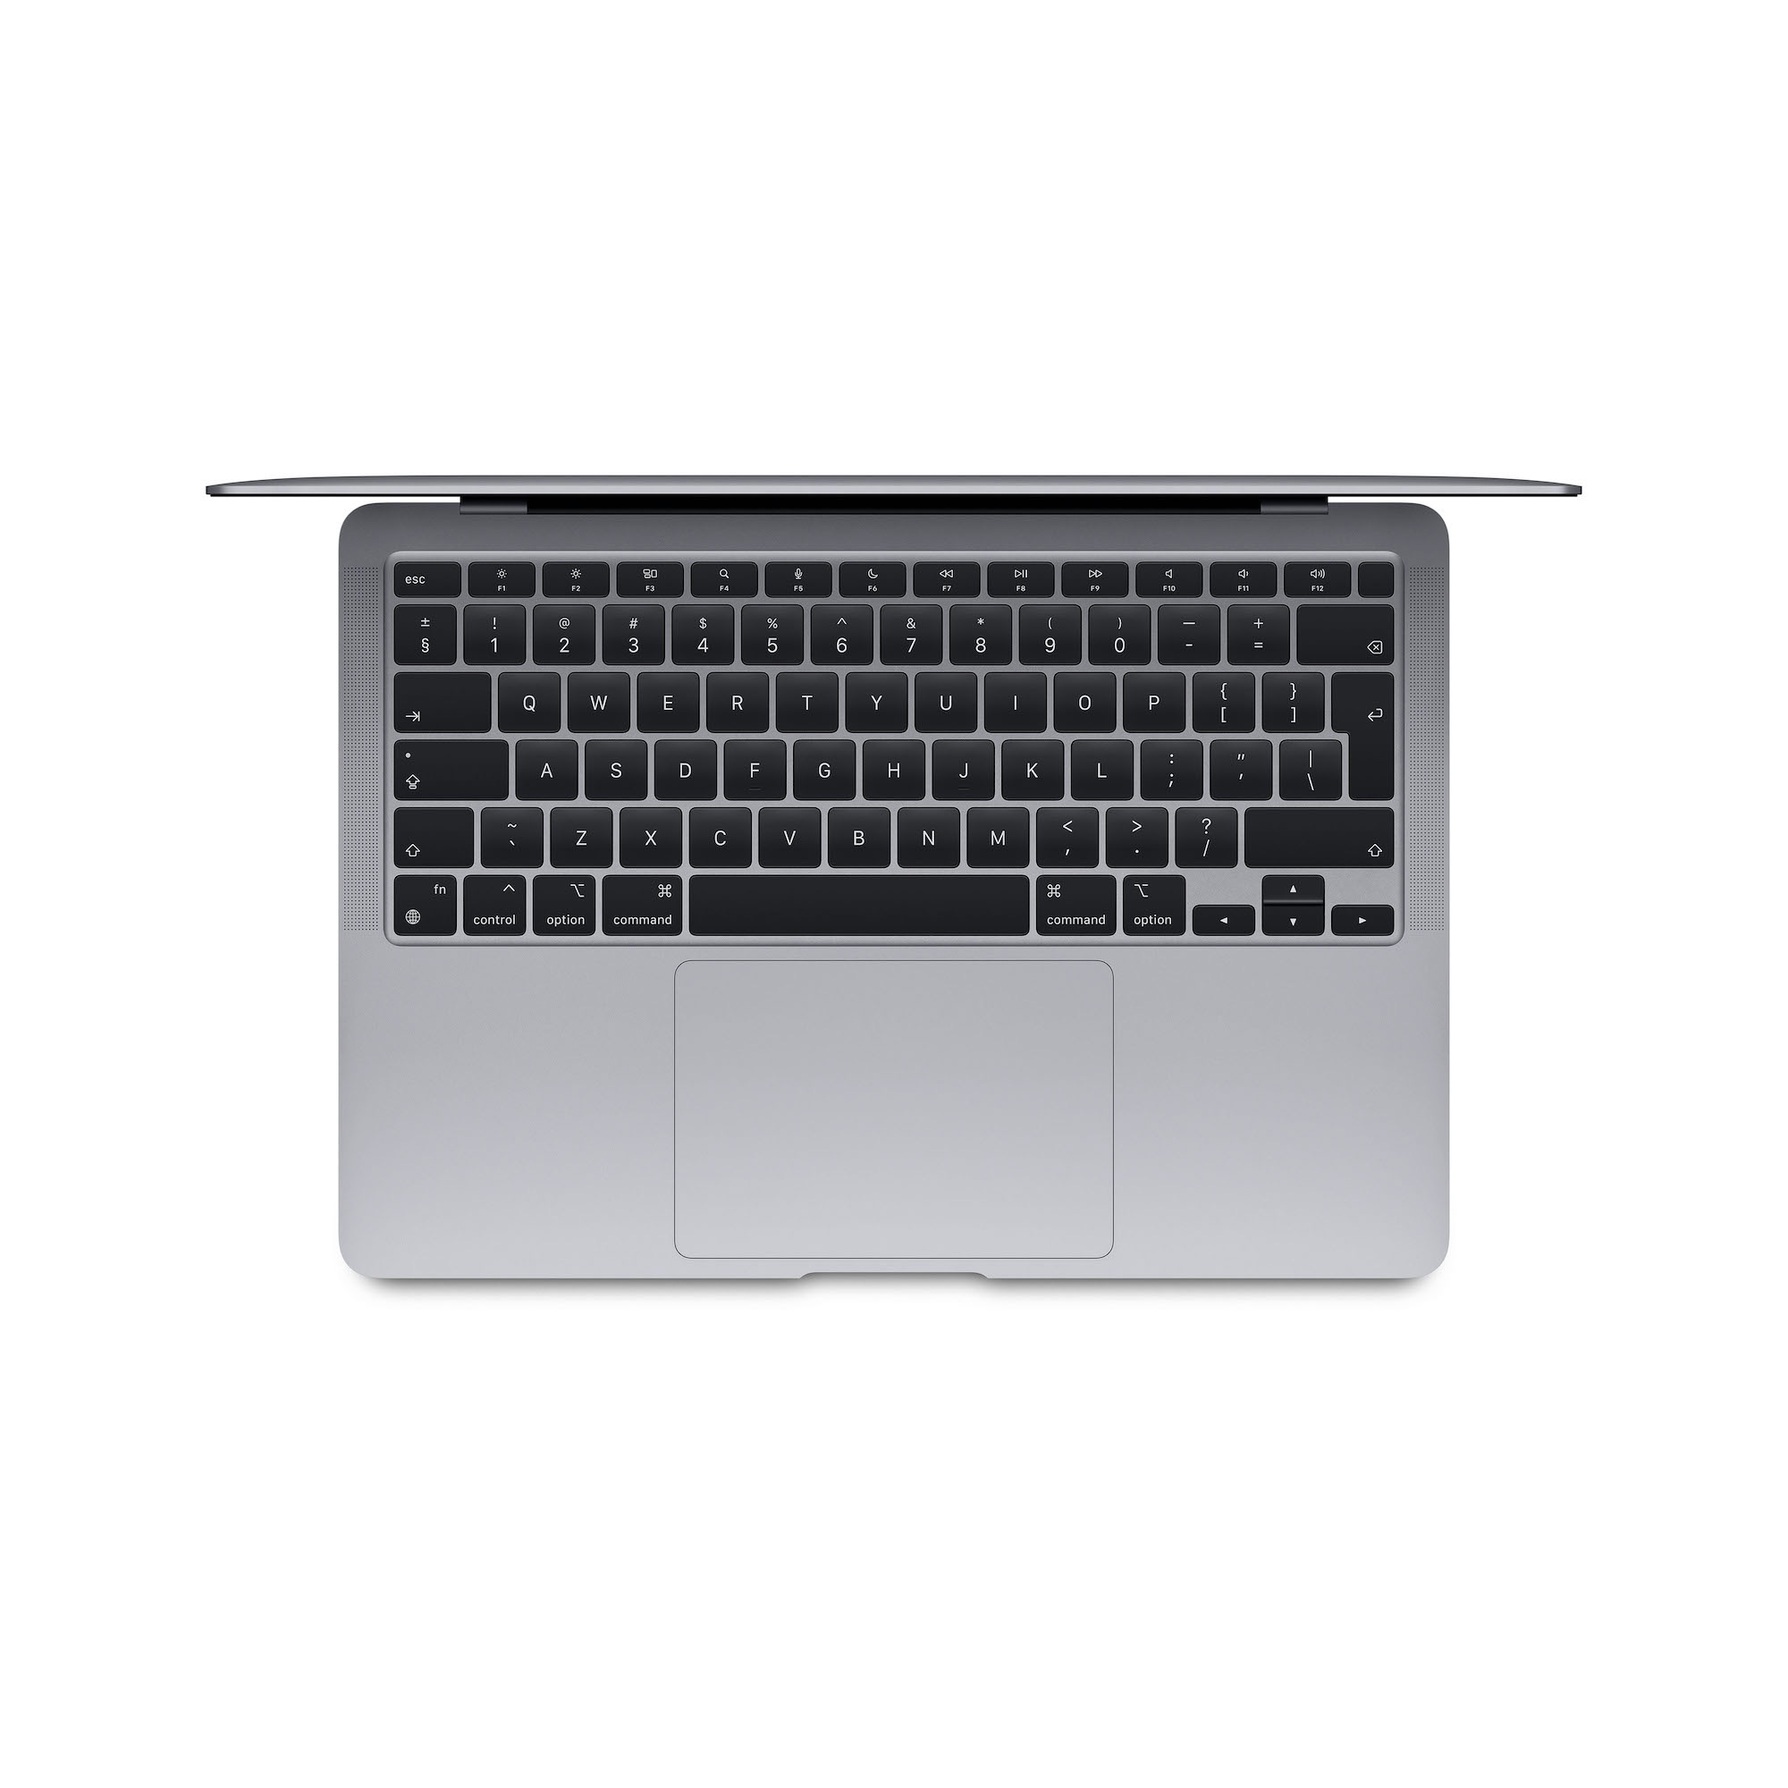 Apple MacBook Air M1/8GB/256GB SSD/GPU M1 (7 rdzeni) (gwiezdna szarość)